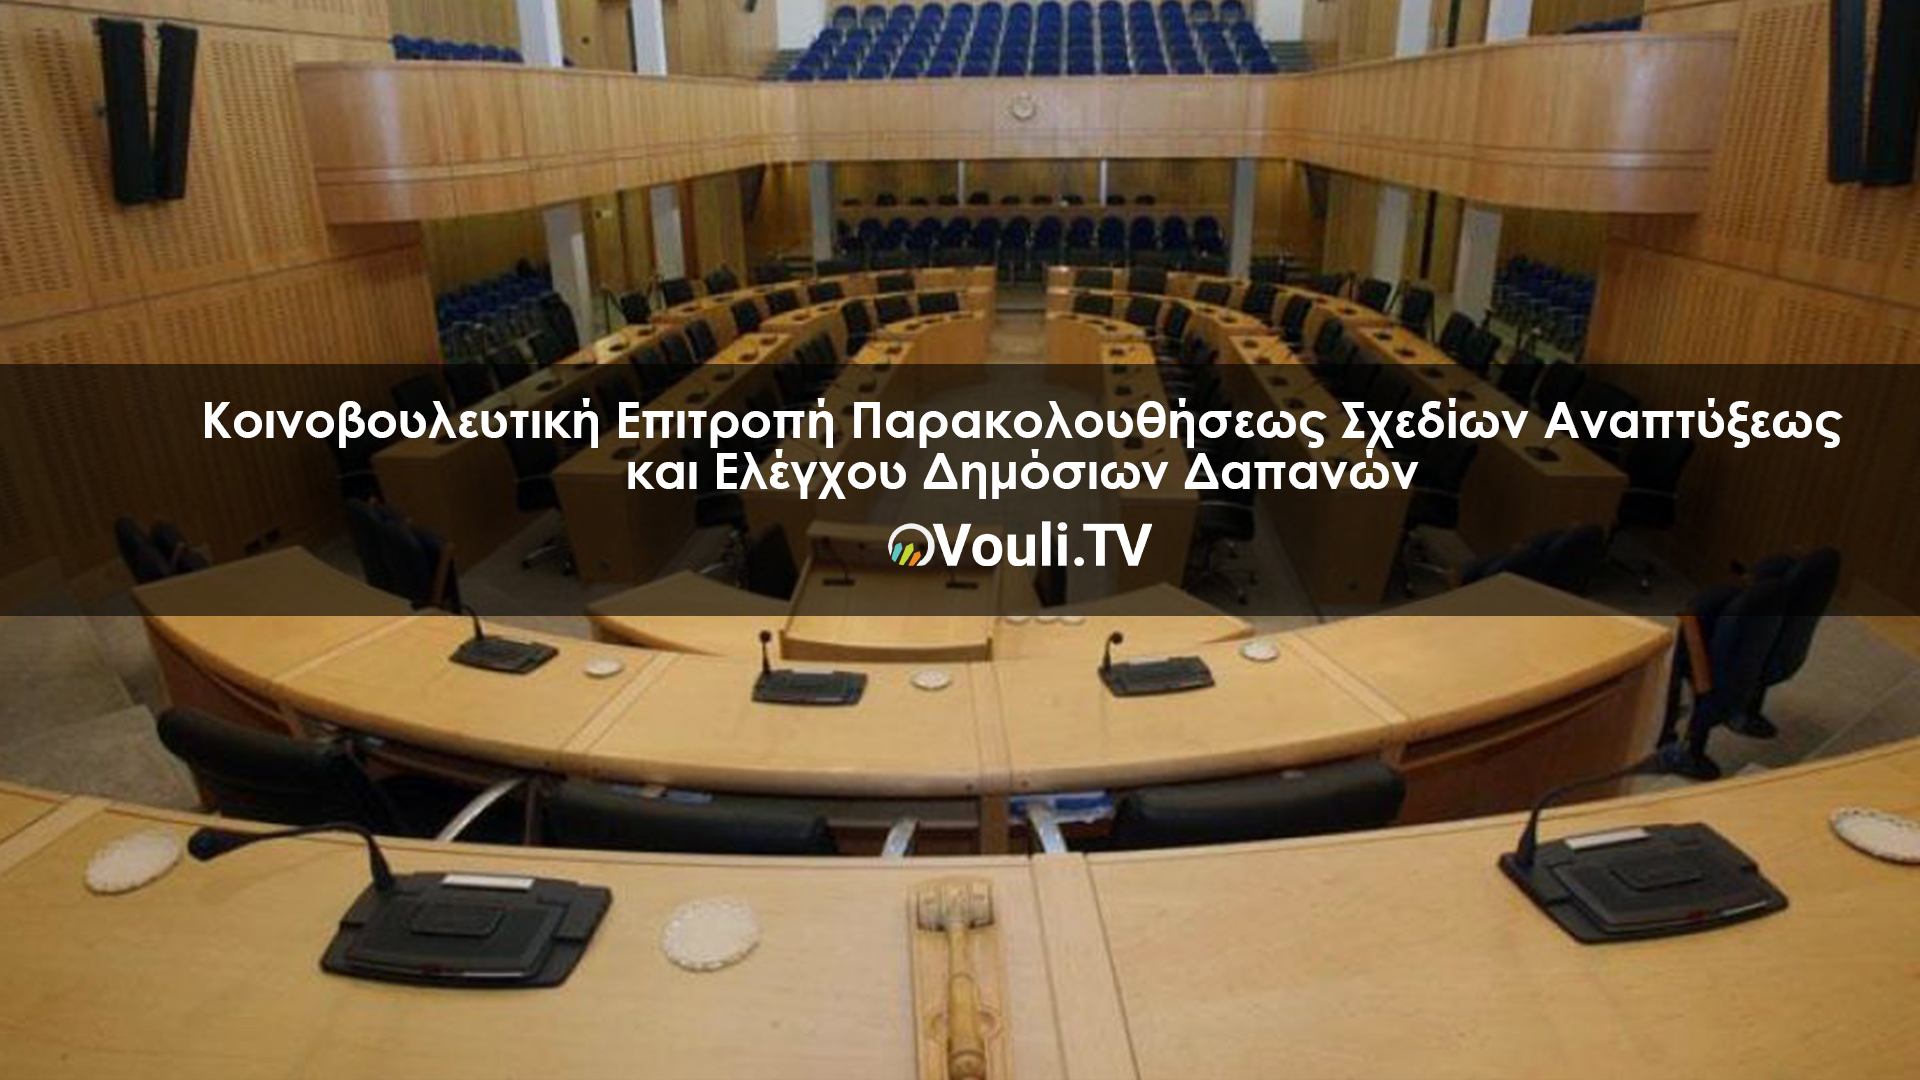 Κοινοβουλευτική Επιτροπή Παρακολουθήσεως Σχεδίων Αναπτύξεως και Ελέγχου Δημόσιων Δαπανών | Vouli report 15/09/2022